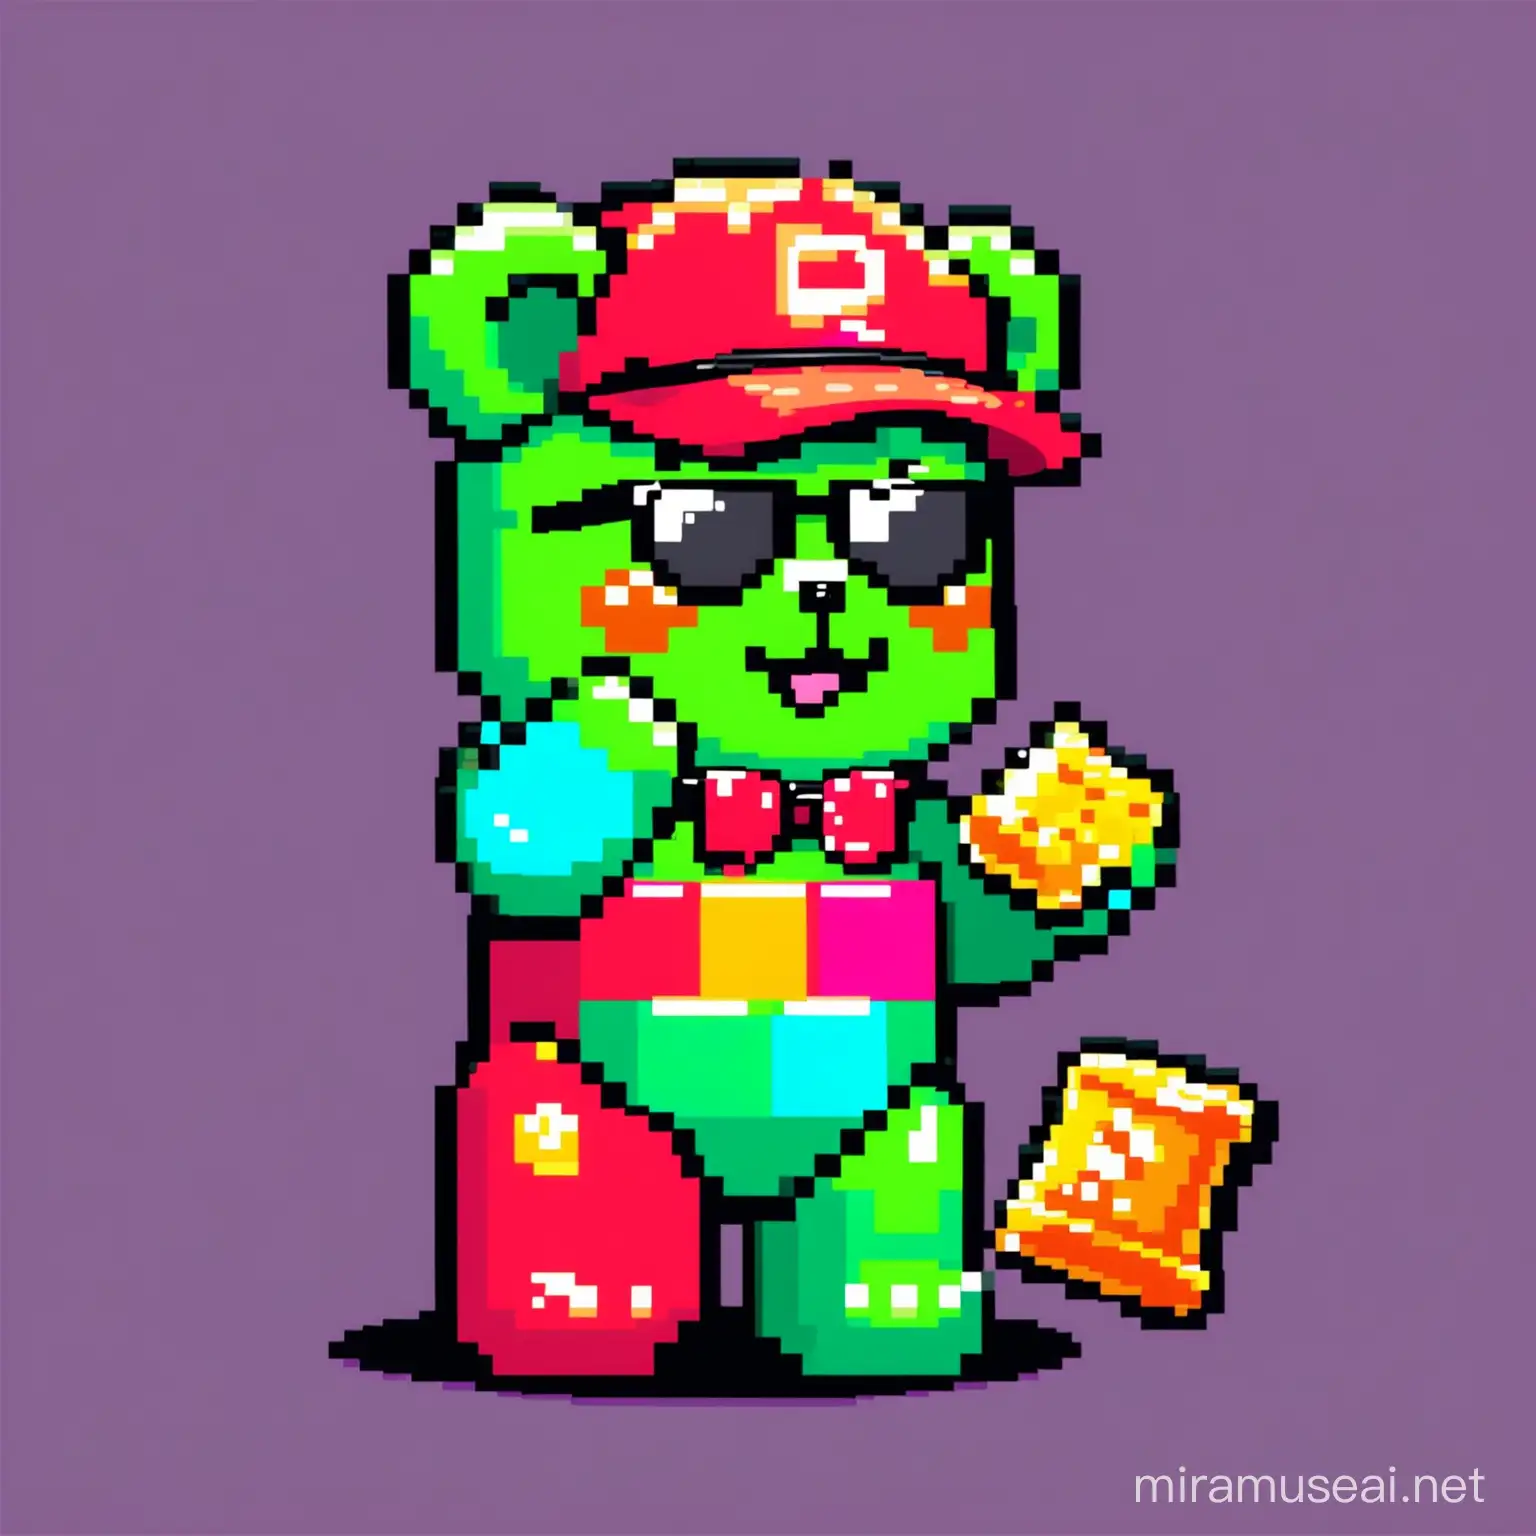 Colorful 8Bit Gummy Bear Mascot for Crypto Meme Token